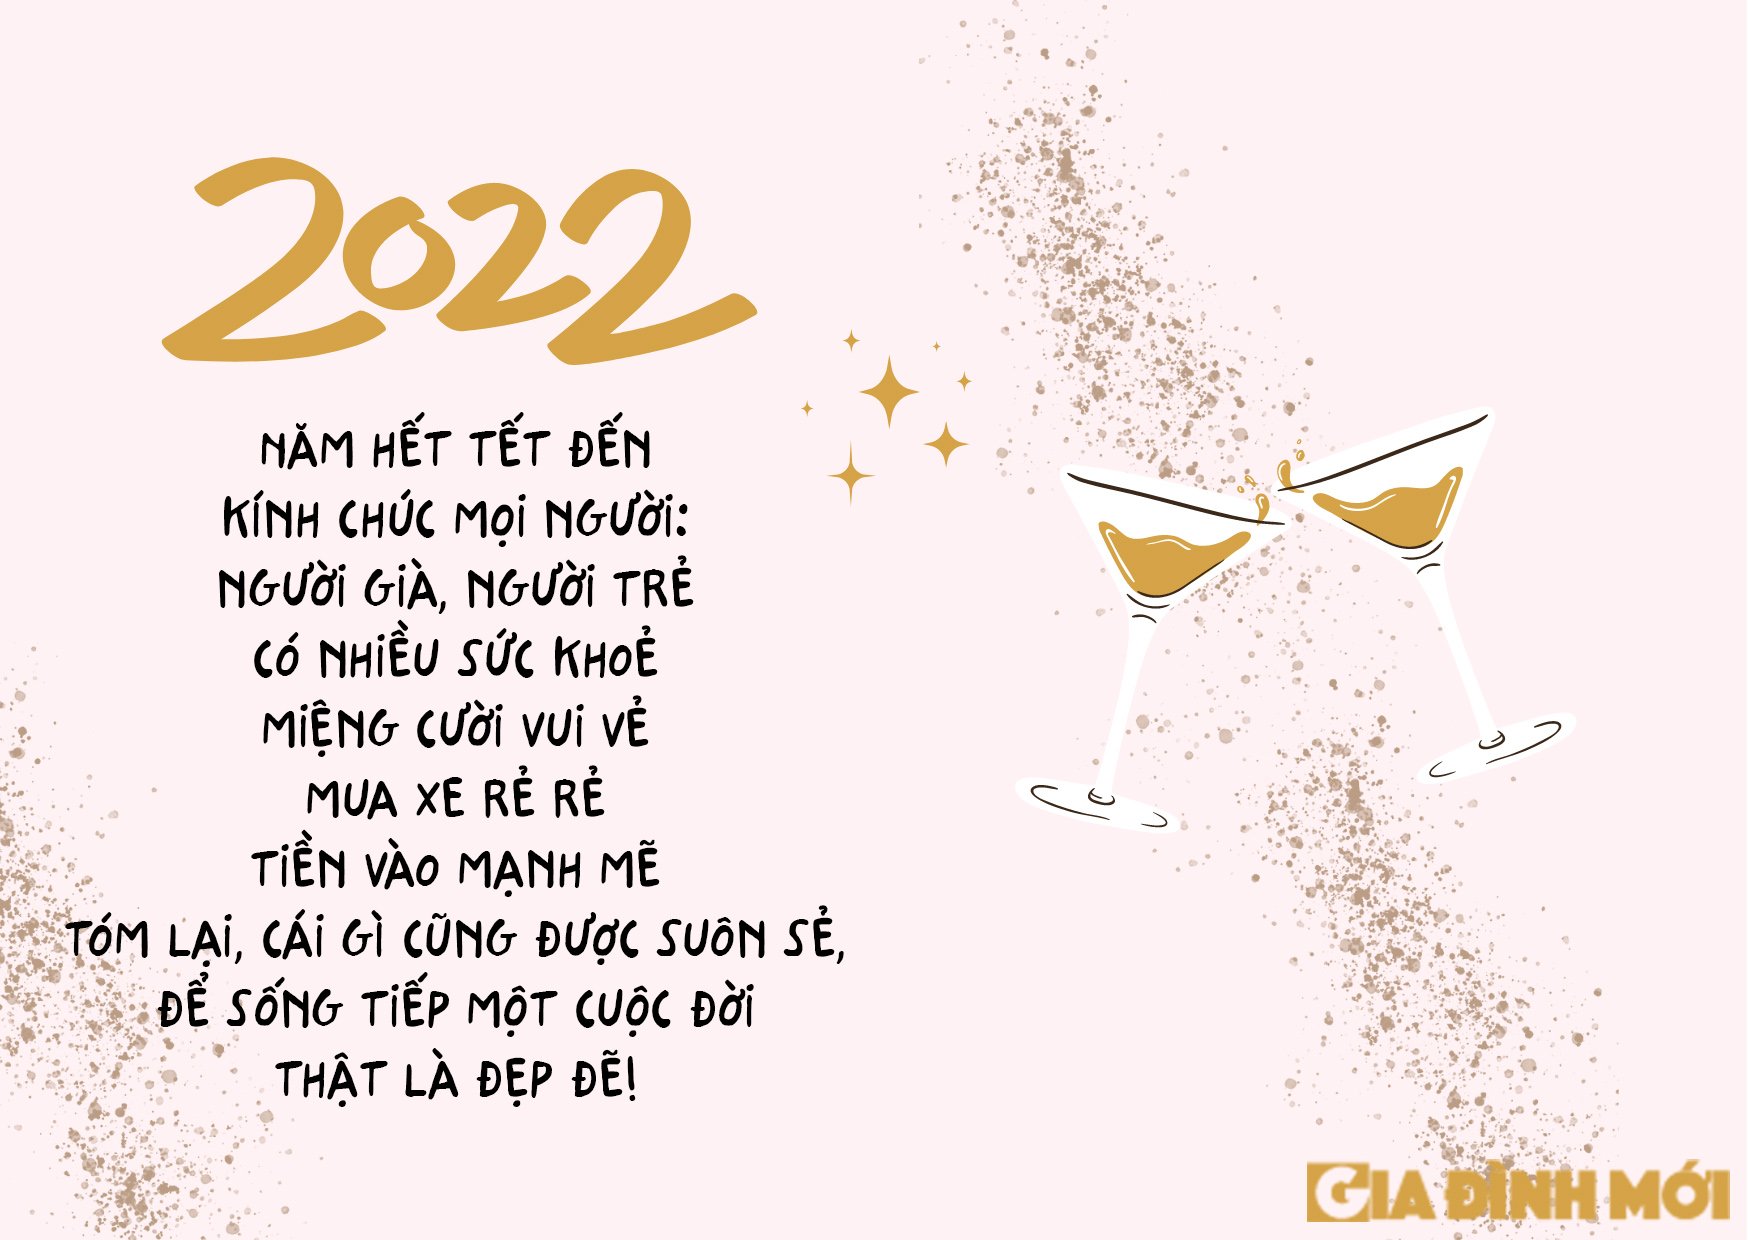 Tuyển tập thiệp chúc mừng năm mới 2022 đẹp, độc, ý nghĩa tặng mọi người 3